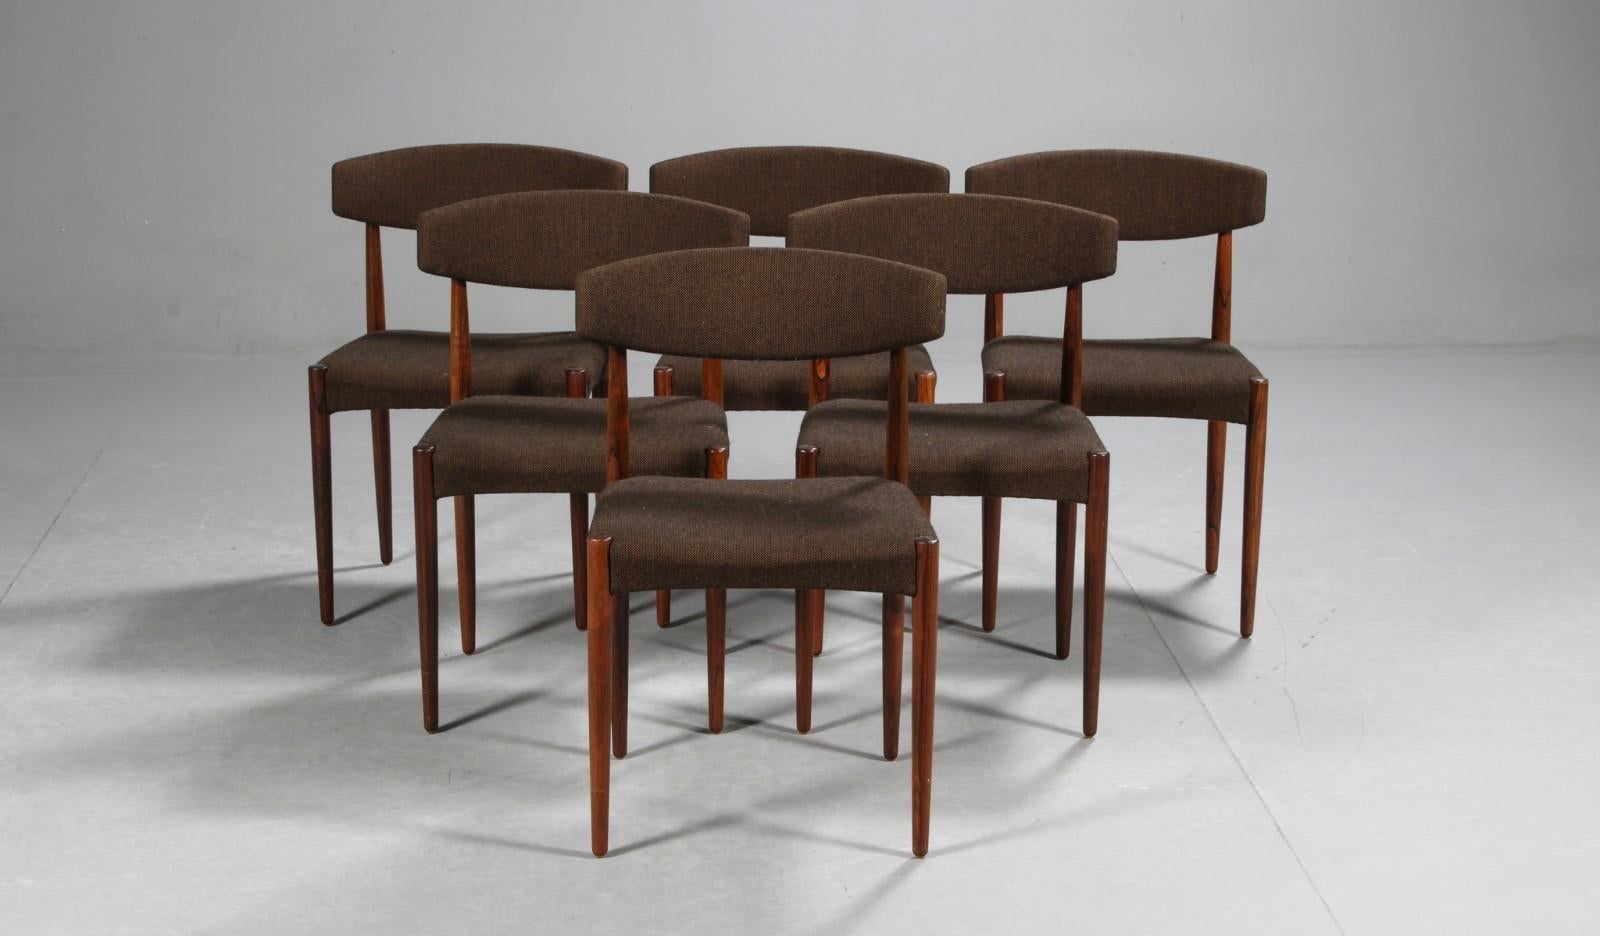 Fabricant de meubles danois. Chaises de salle à manger avec structure en bois dur massif, assise et dossier nouvellement tapissés en laine brune. 1960s. Sh. 45 cm. Quelques petites taches sur le tissu des sièges.